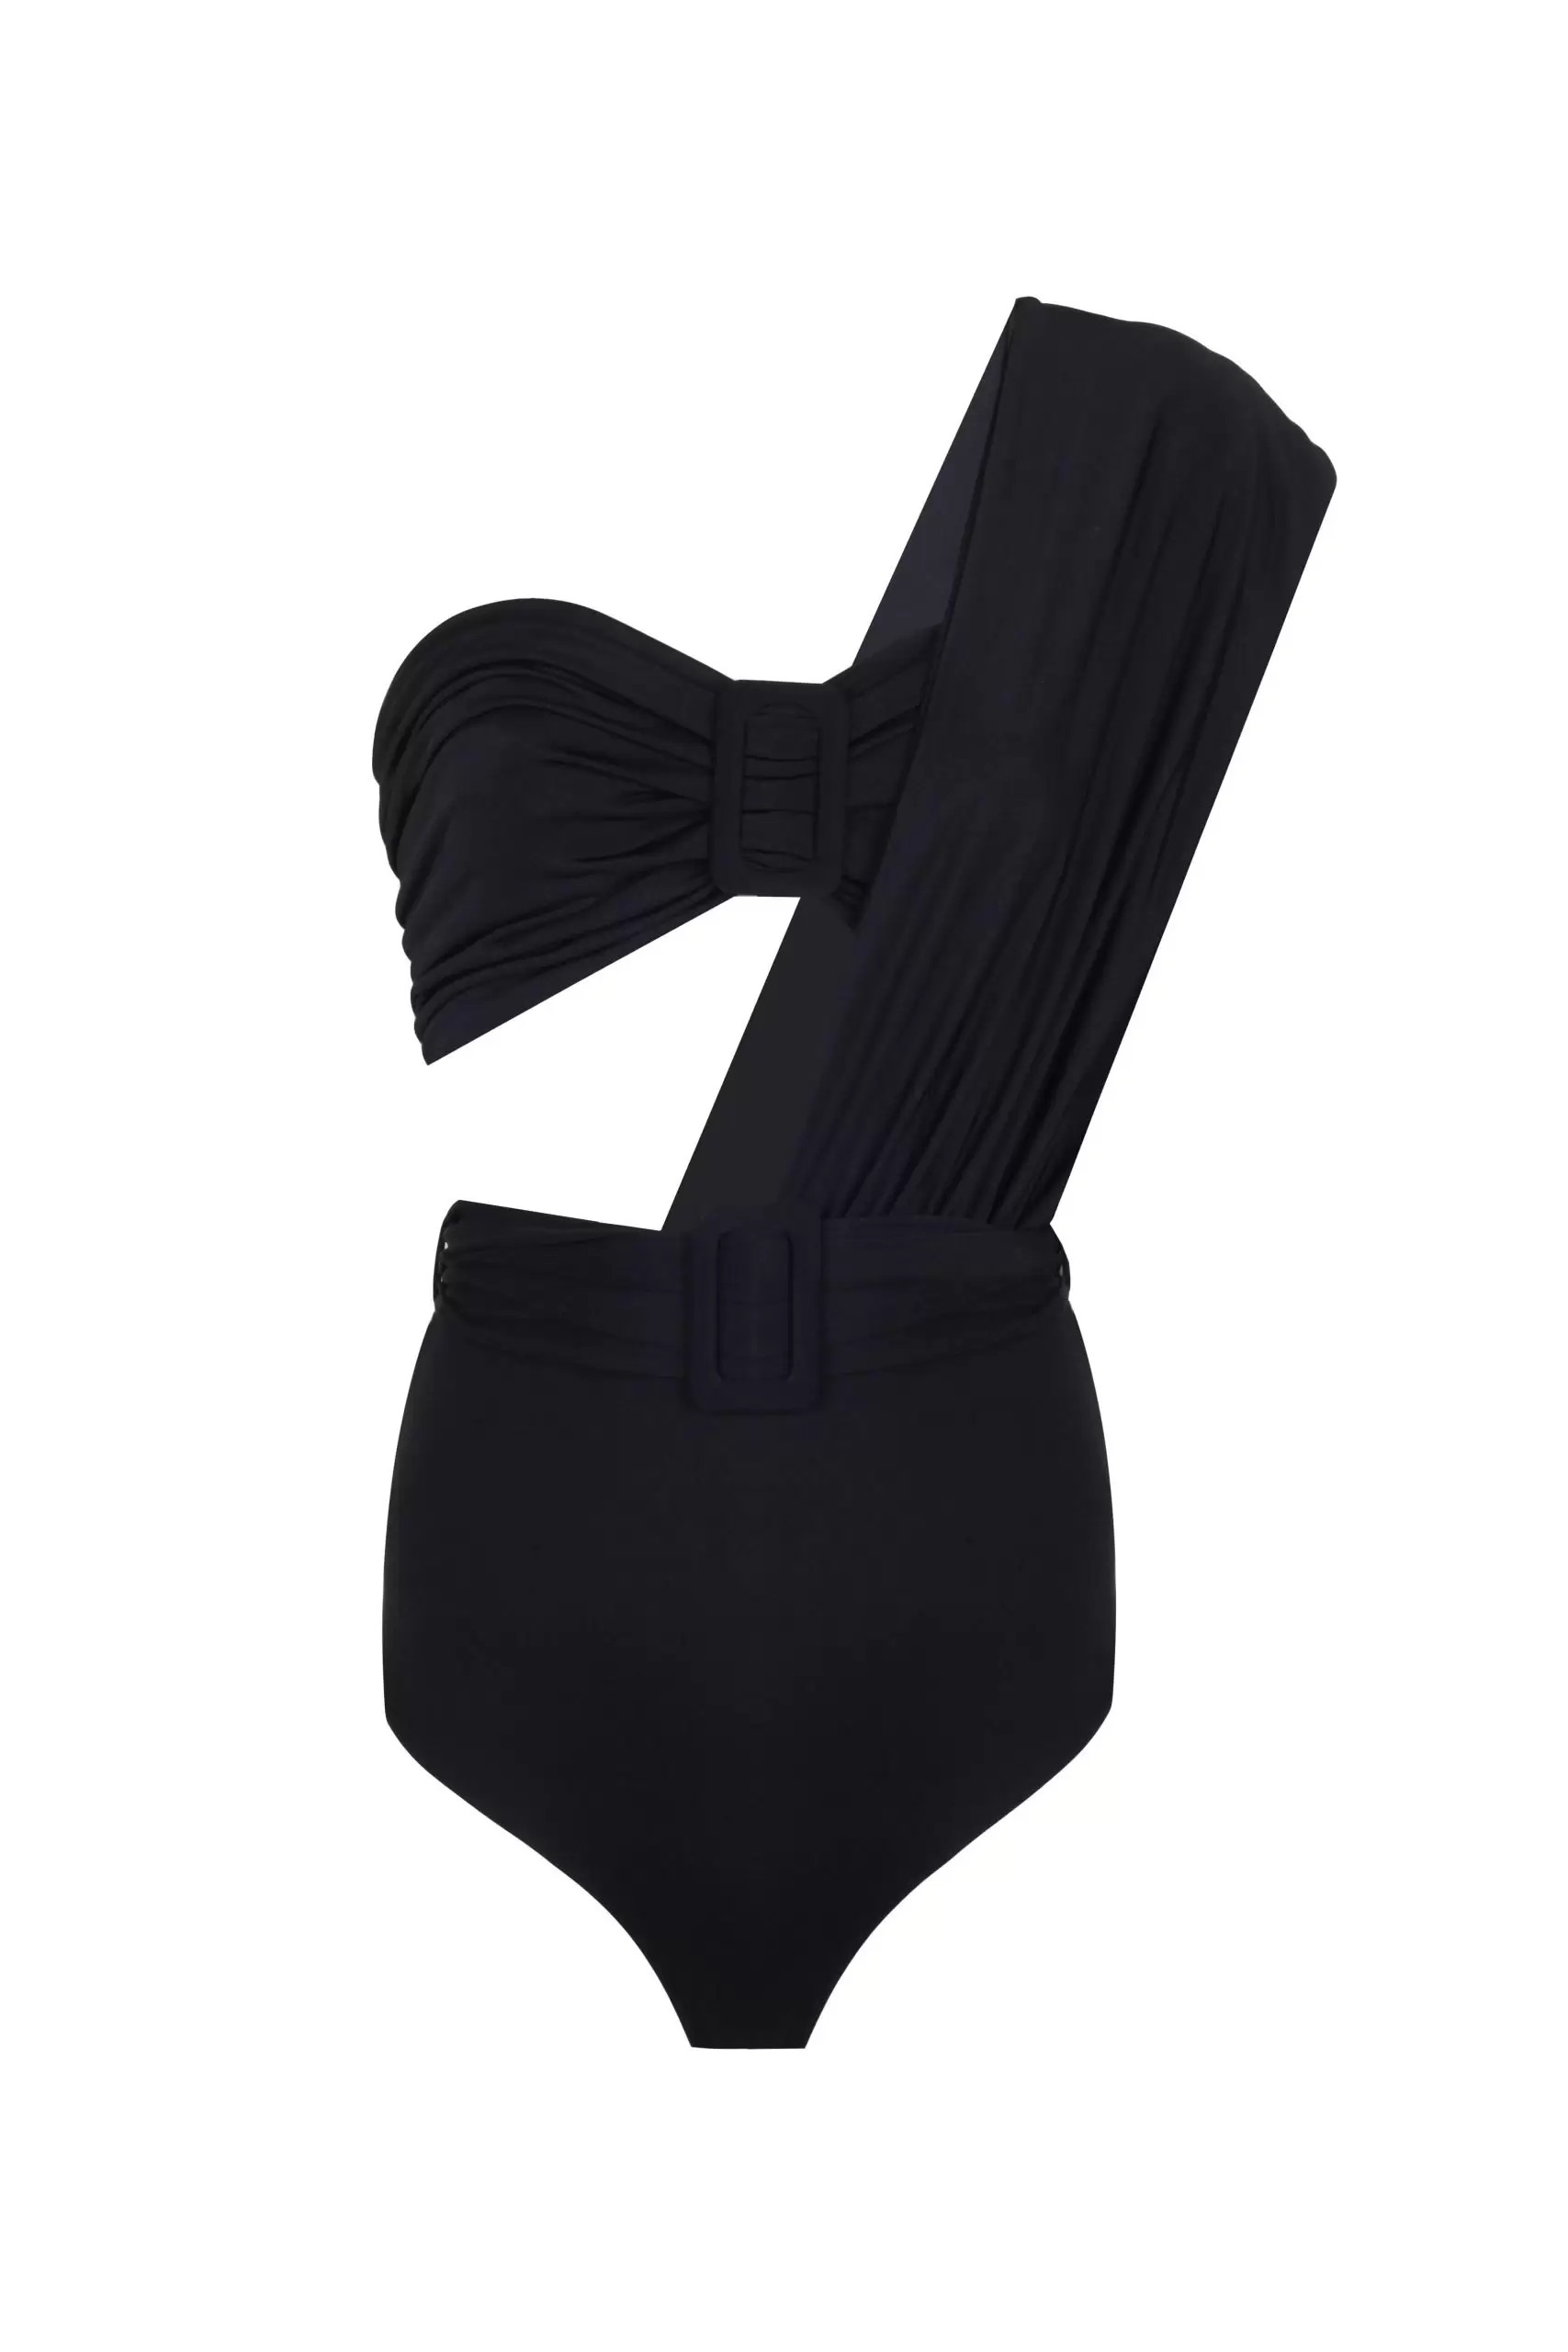 Cayo Coco Black Swimsuit